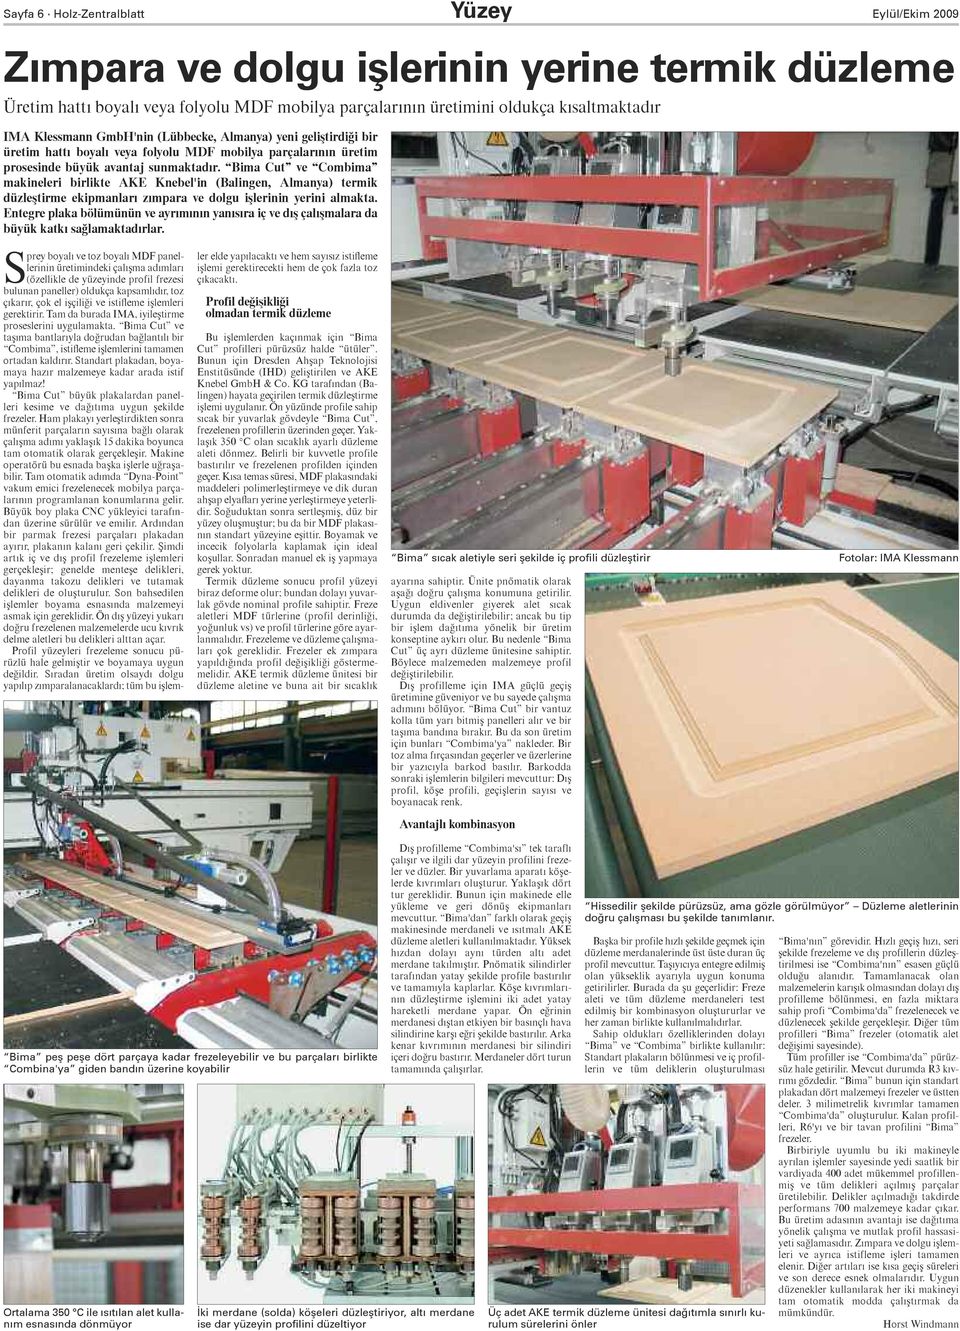 Bima Cut ve Combima makineleri birlikte AKE Knebel'in (Balingen, Almanya) termik düzleştirme ekipmanları zımpara ve dolgu işlerinin yerini almakta.